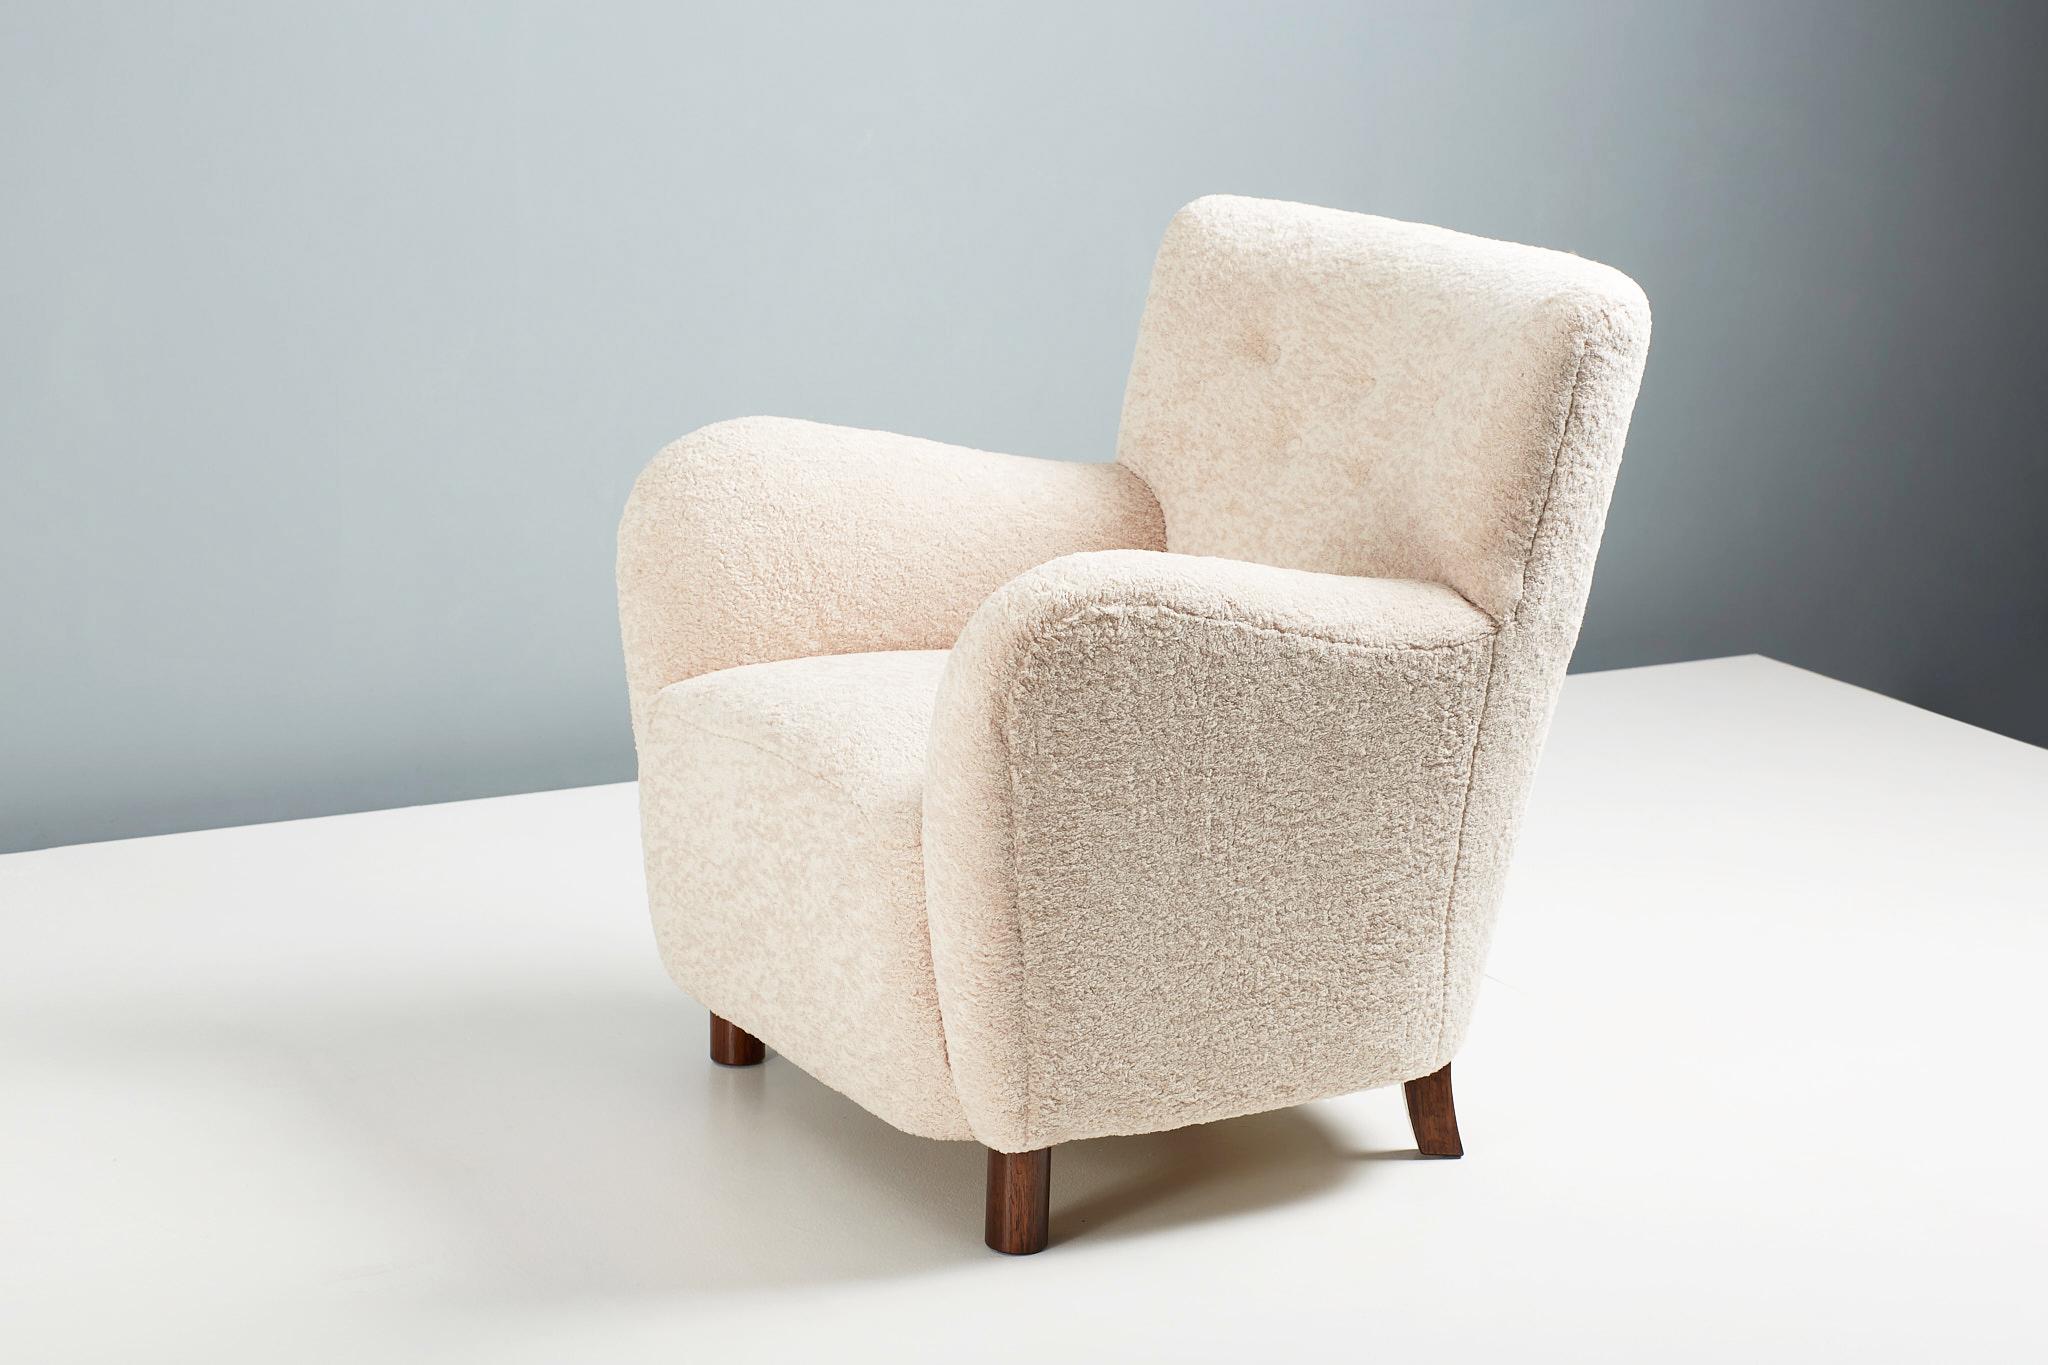 Dagmar design - chaise longue modèle 54.

Une chaise longue sur mesure, conçue et fabriquée à la main dans nos ateliers de Londres, avec des matériaux de la plus haute qualité. La chaise 54 est disponible sur commande dans une gamme de couleurs et